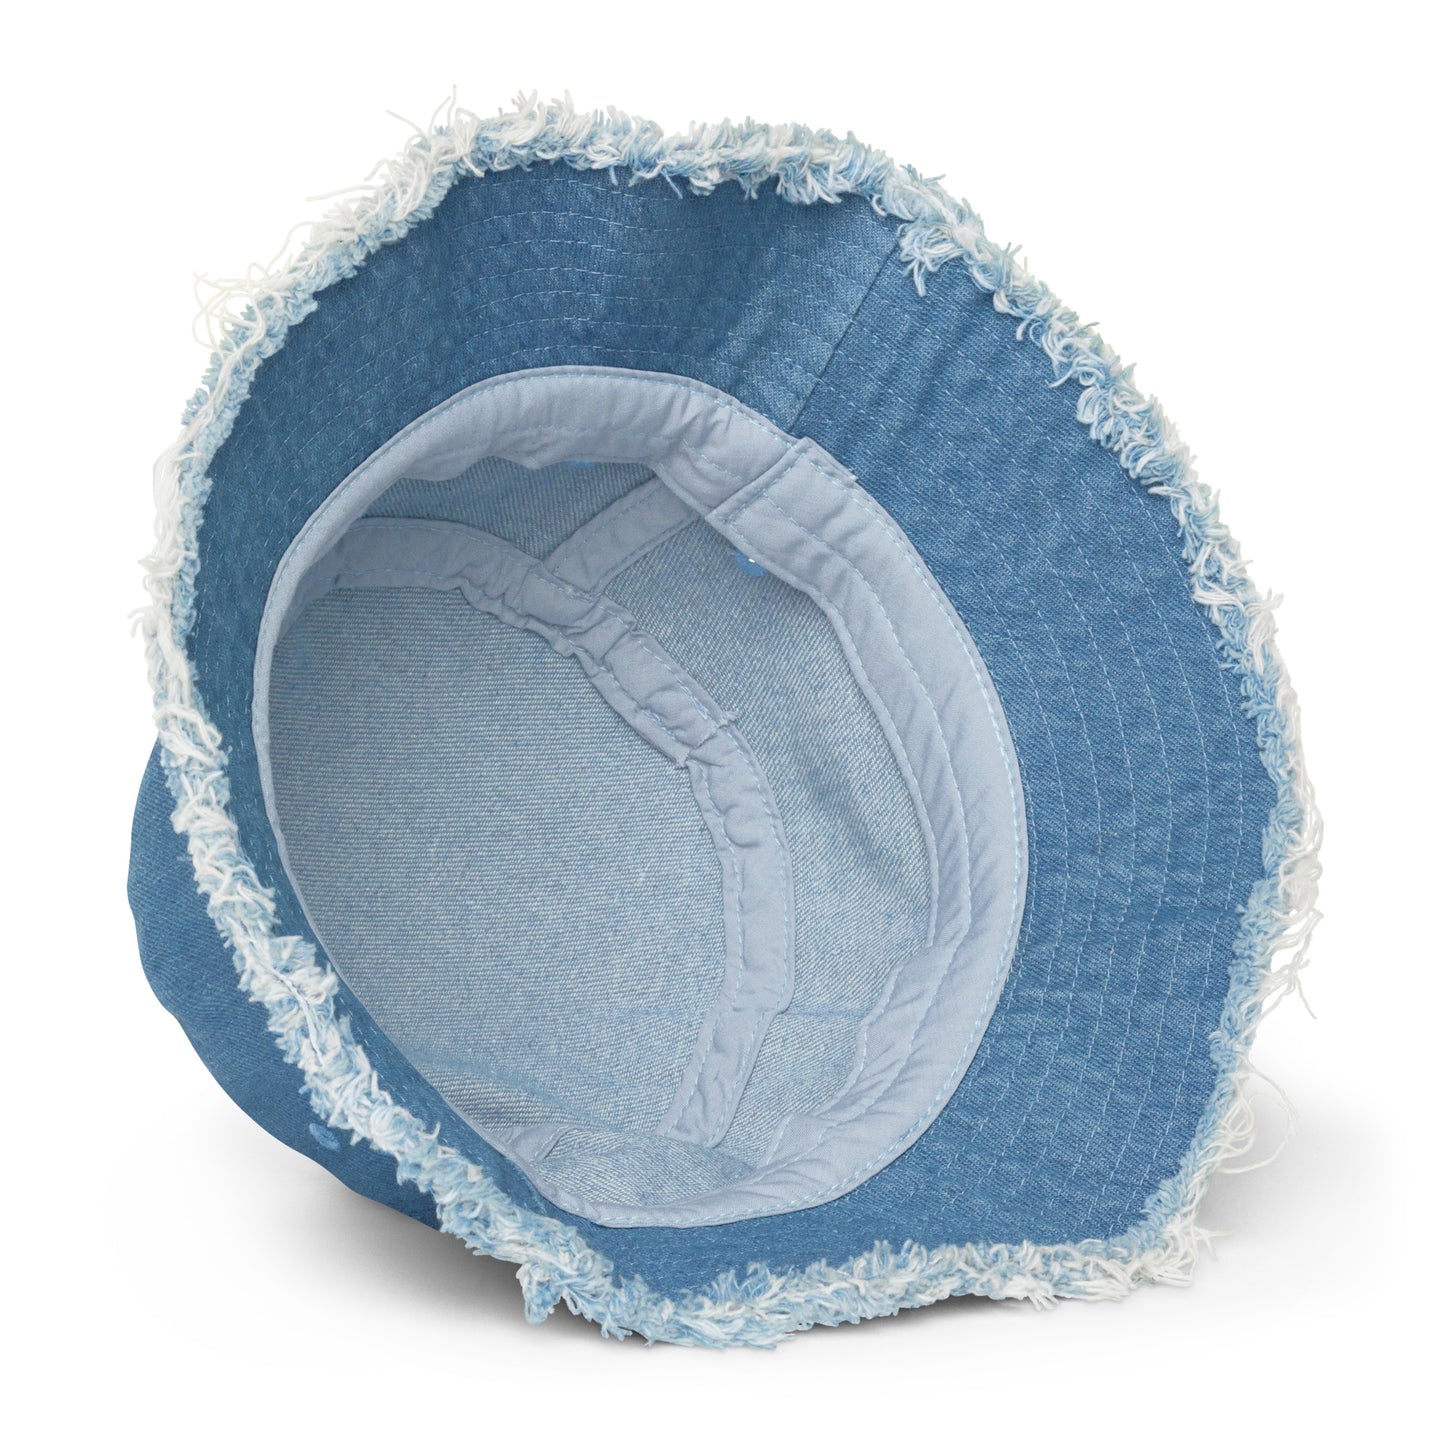 Y005 - Topi baldi denim bermasalah (biru)